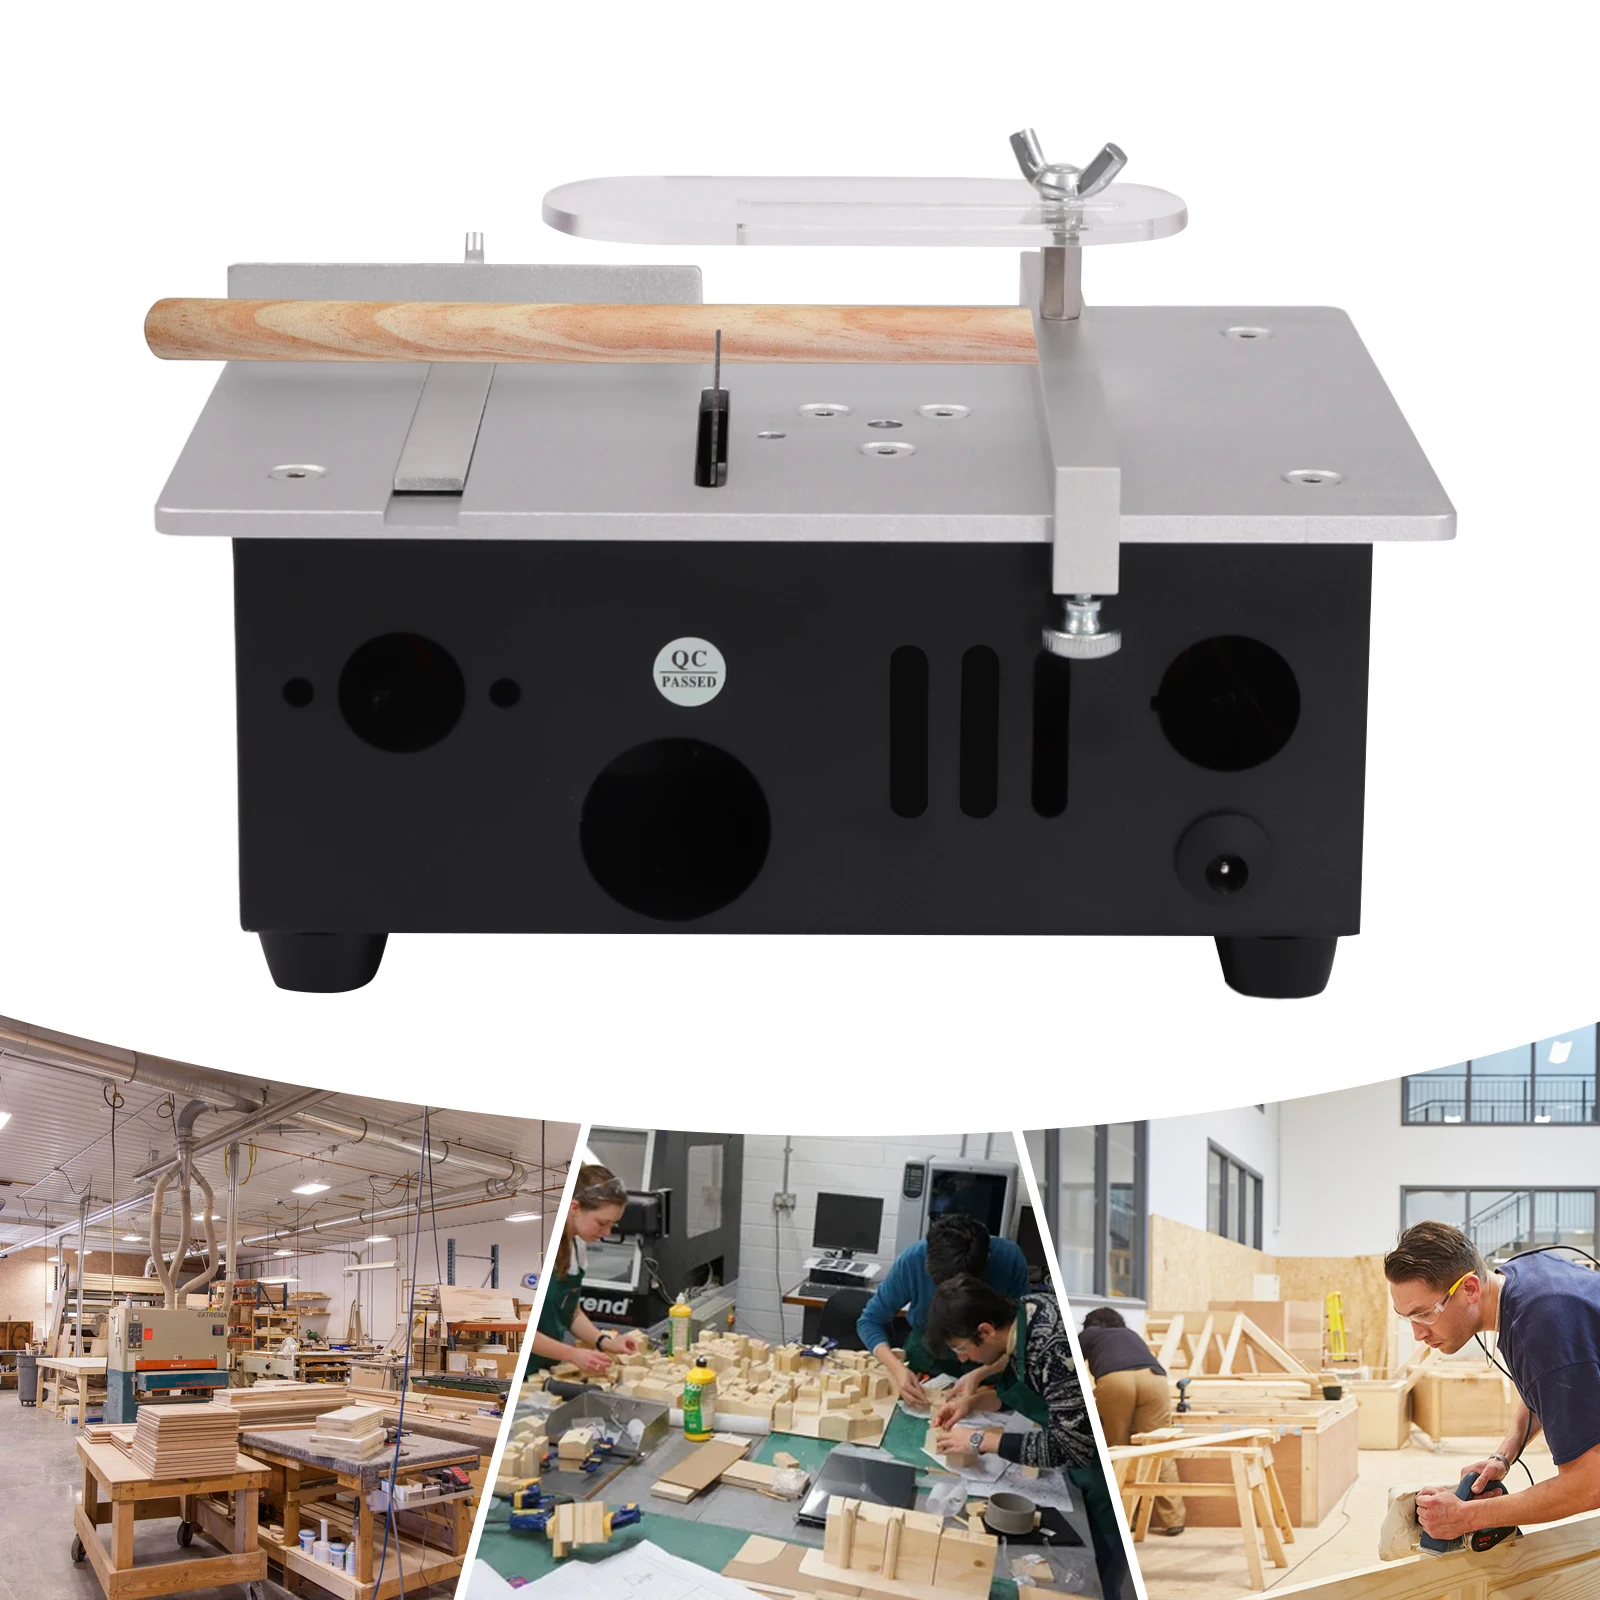 mini-sierra-de-mesa-deslizante-para-el-hogar-carpinteria-bricolaje-hobby-modelo-sierra-de-banco-de-corte